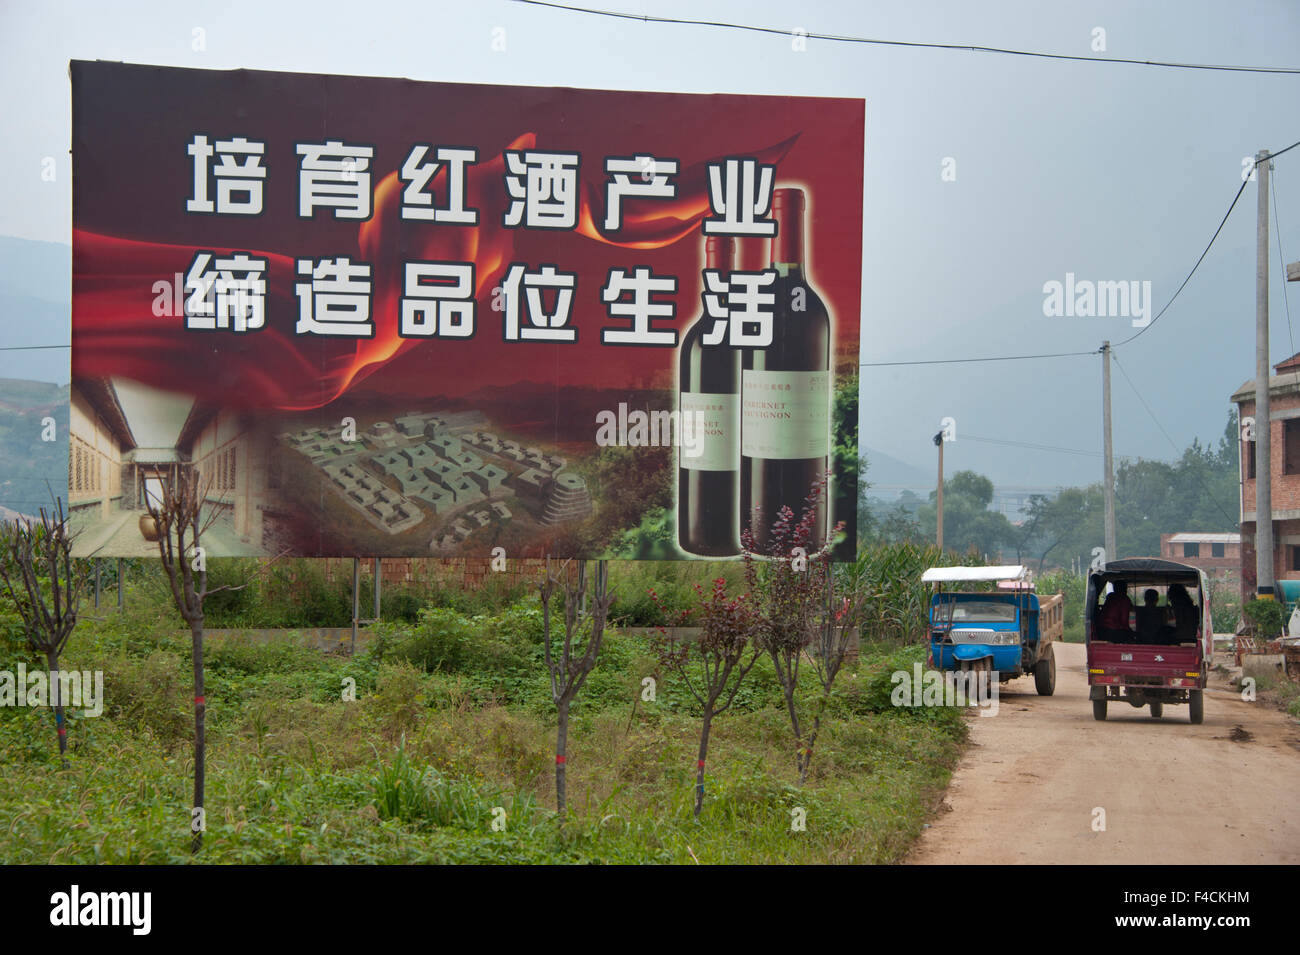 China, Shaanxi. Plakatwerbung Jade Valley Winery und Resort. Stockfoto